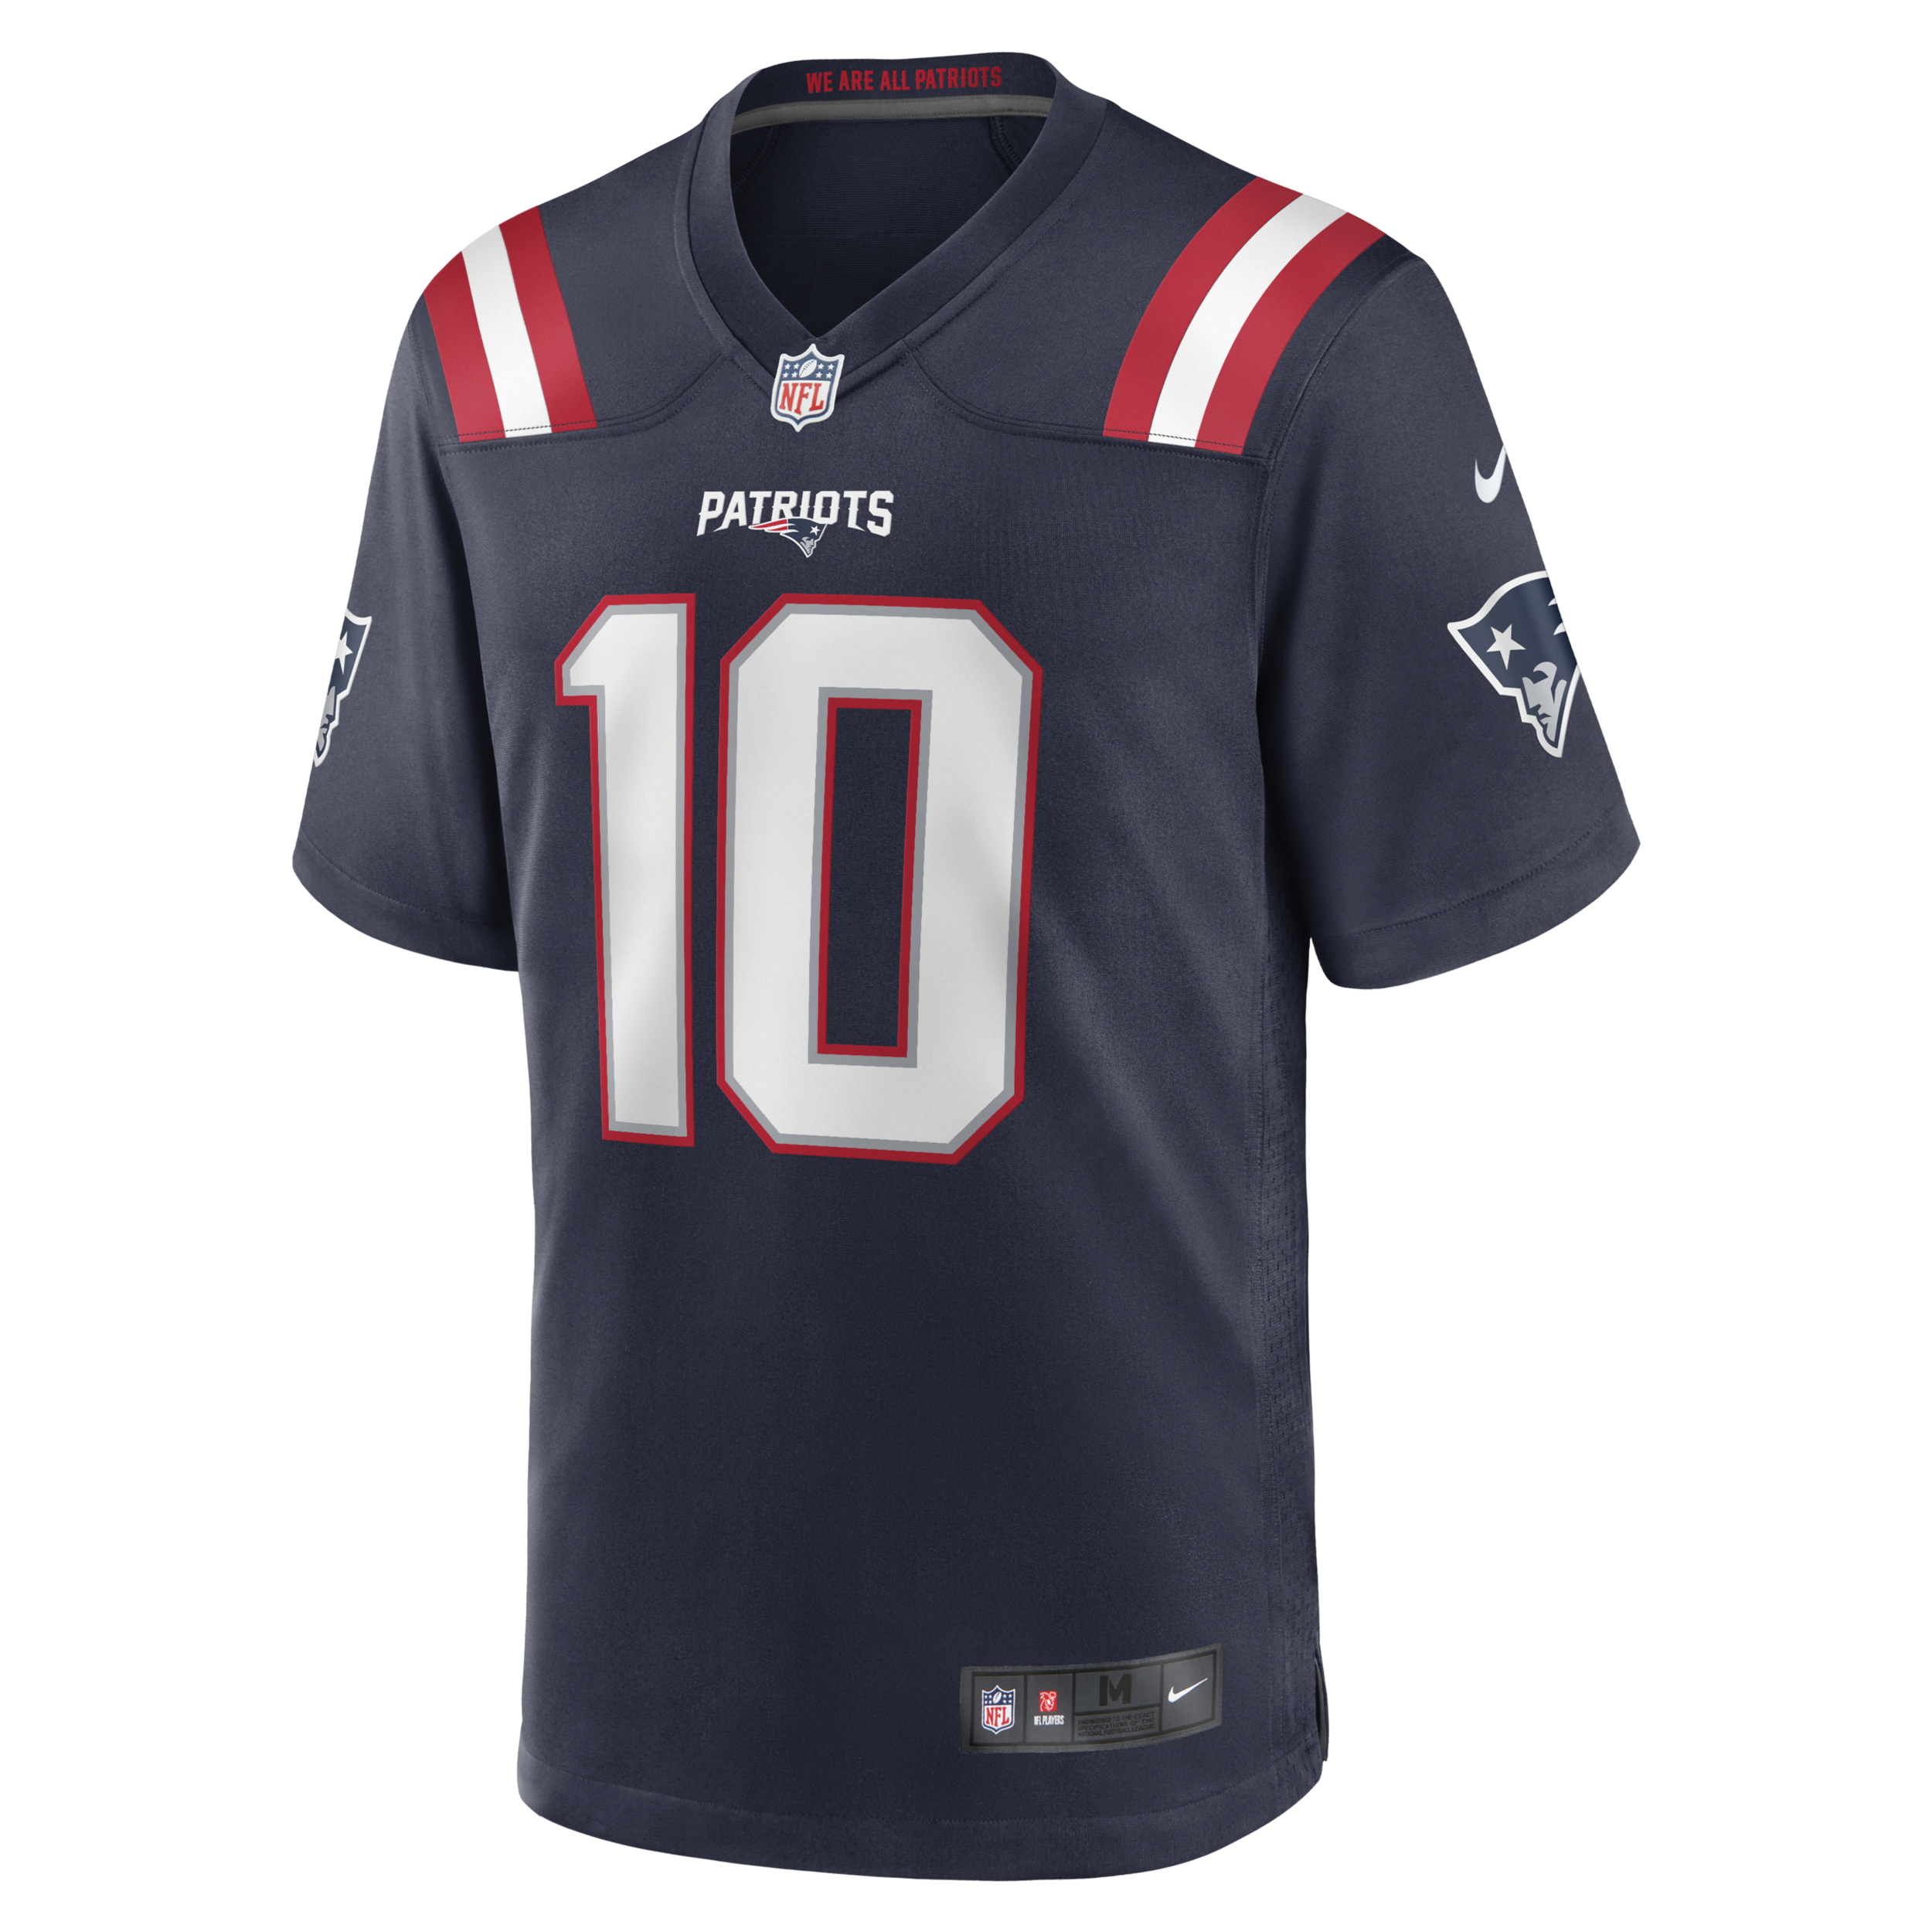 Nike NFL New England Patriots (Mac Jones) American football-wedstrijdjersey voor heren - Blauw